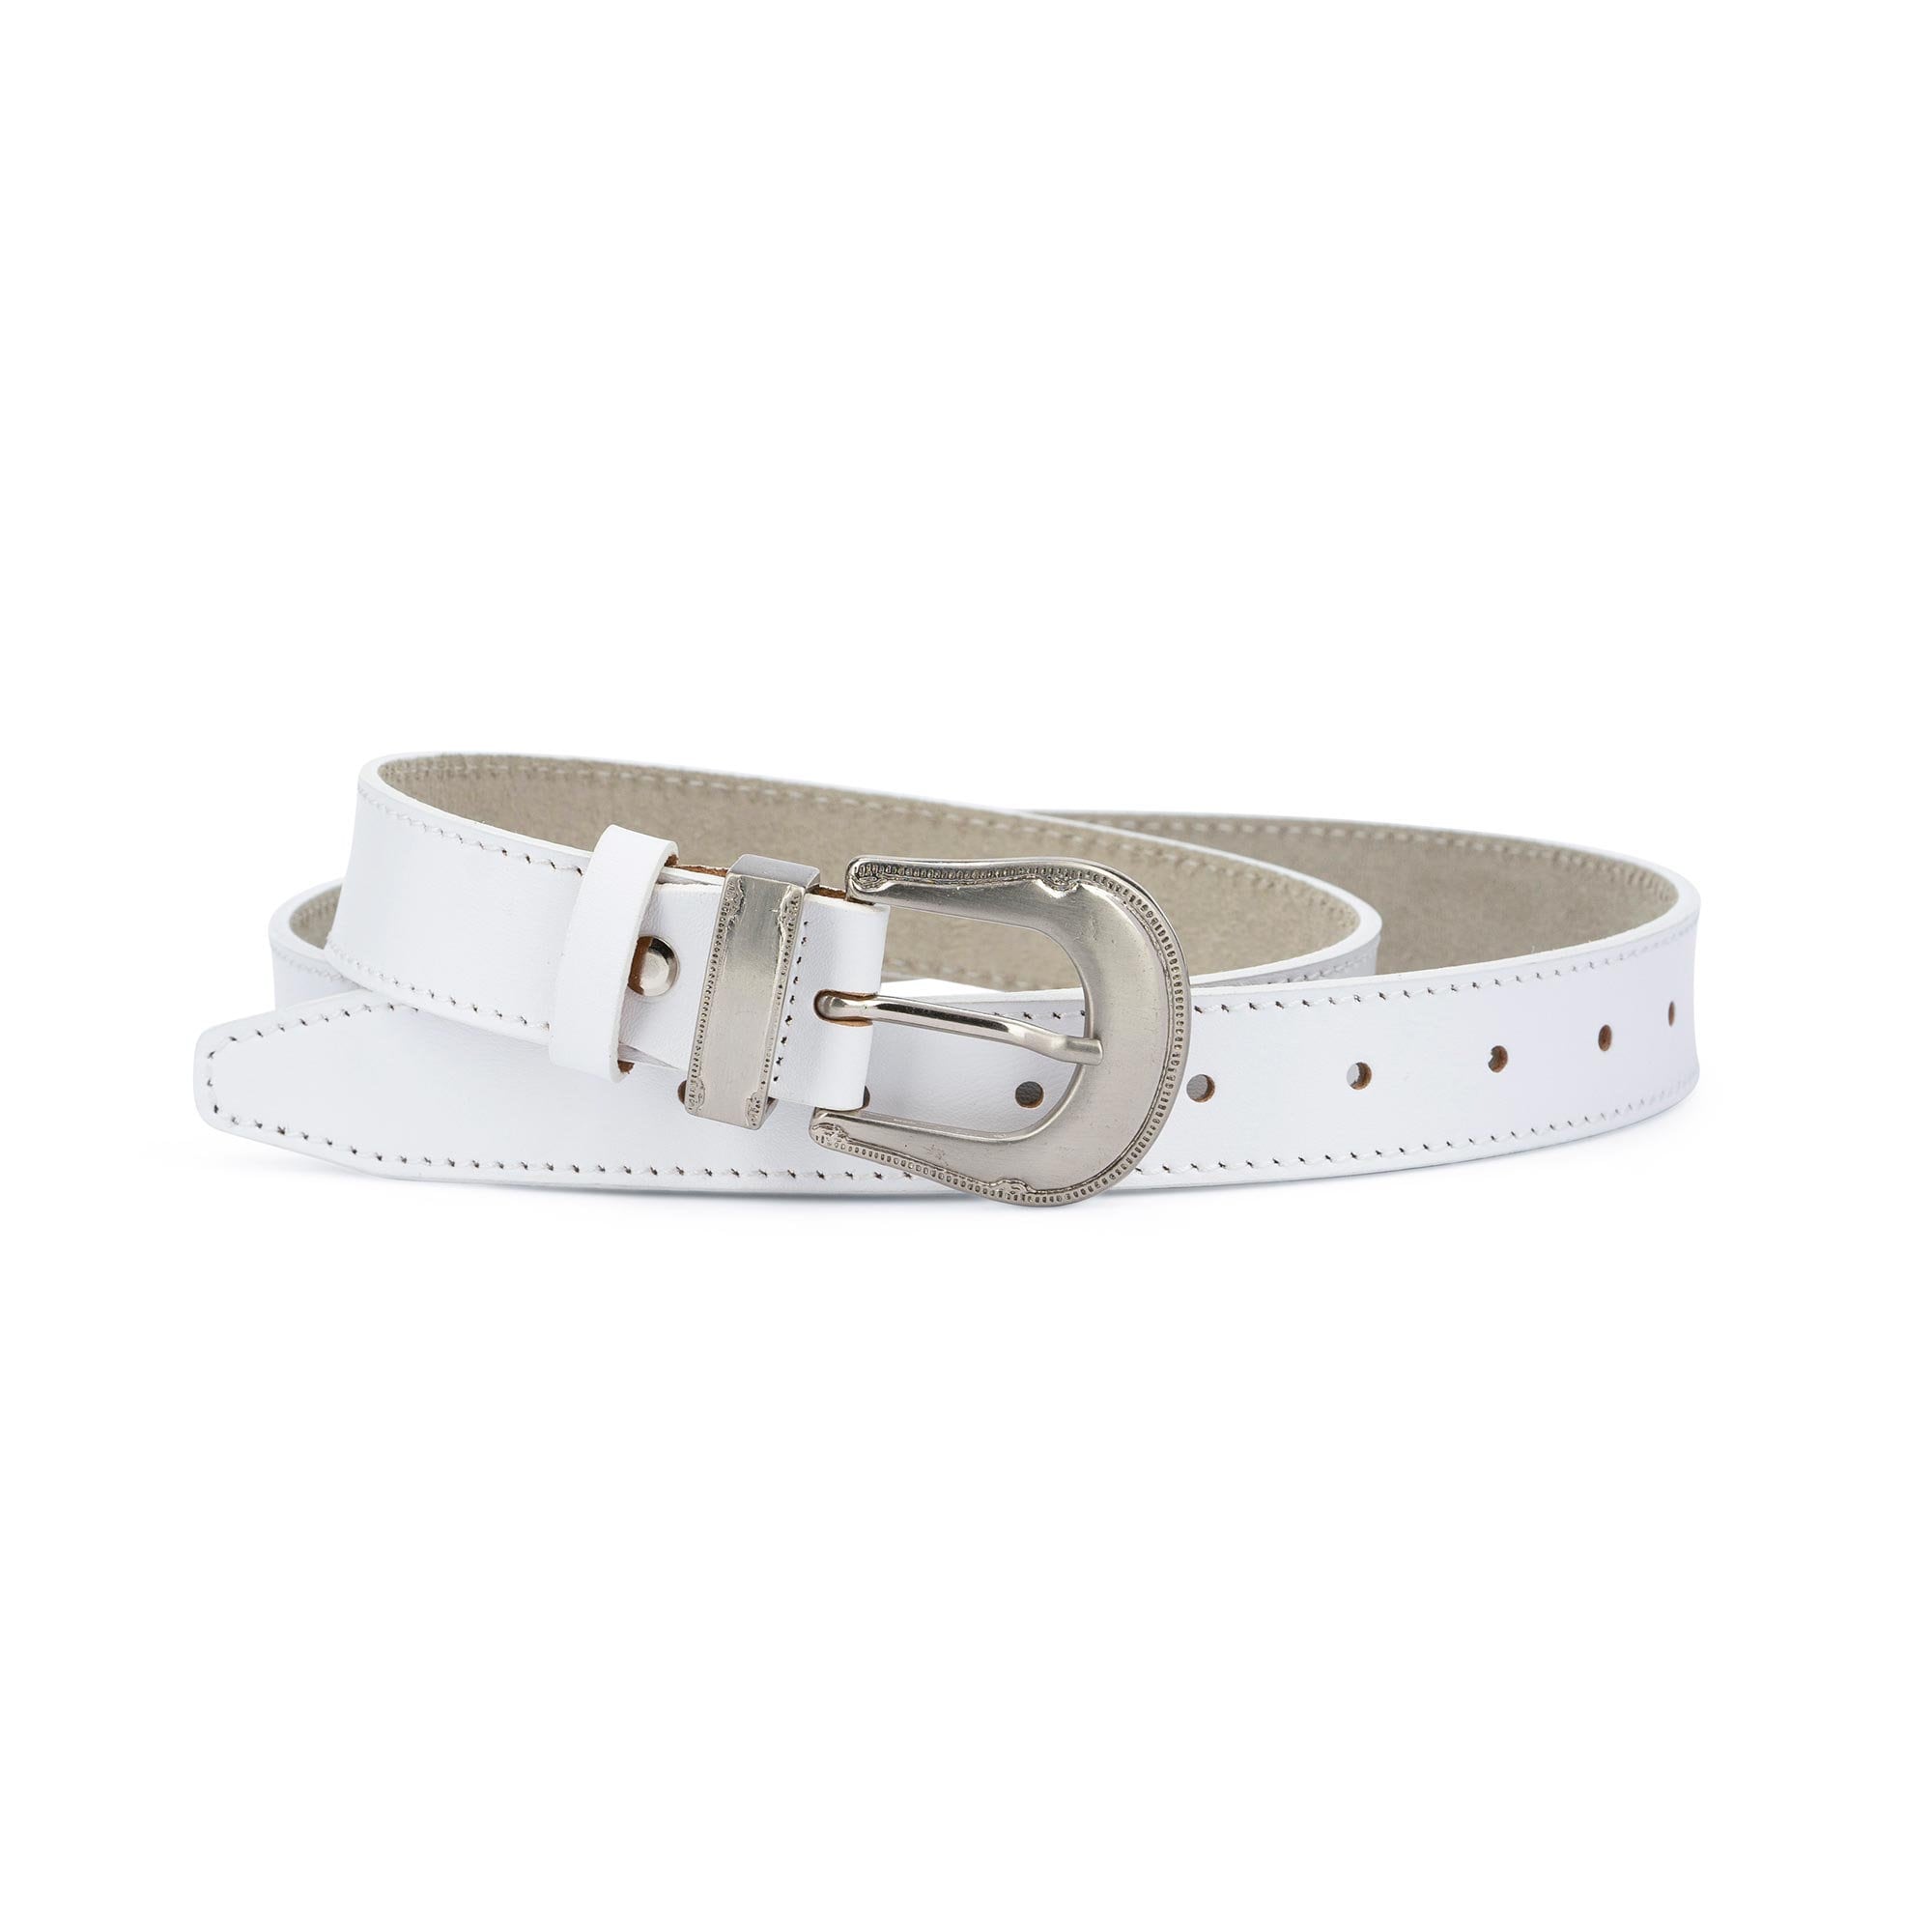 Western belts mens White leather belt for men White belt mens | Etsy